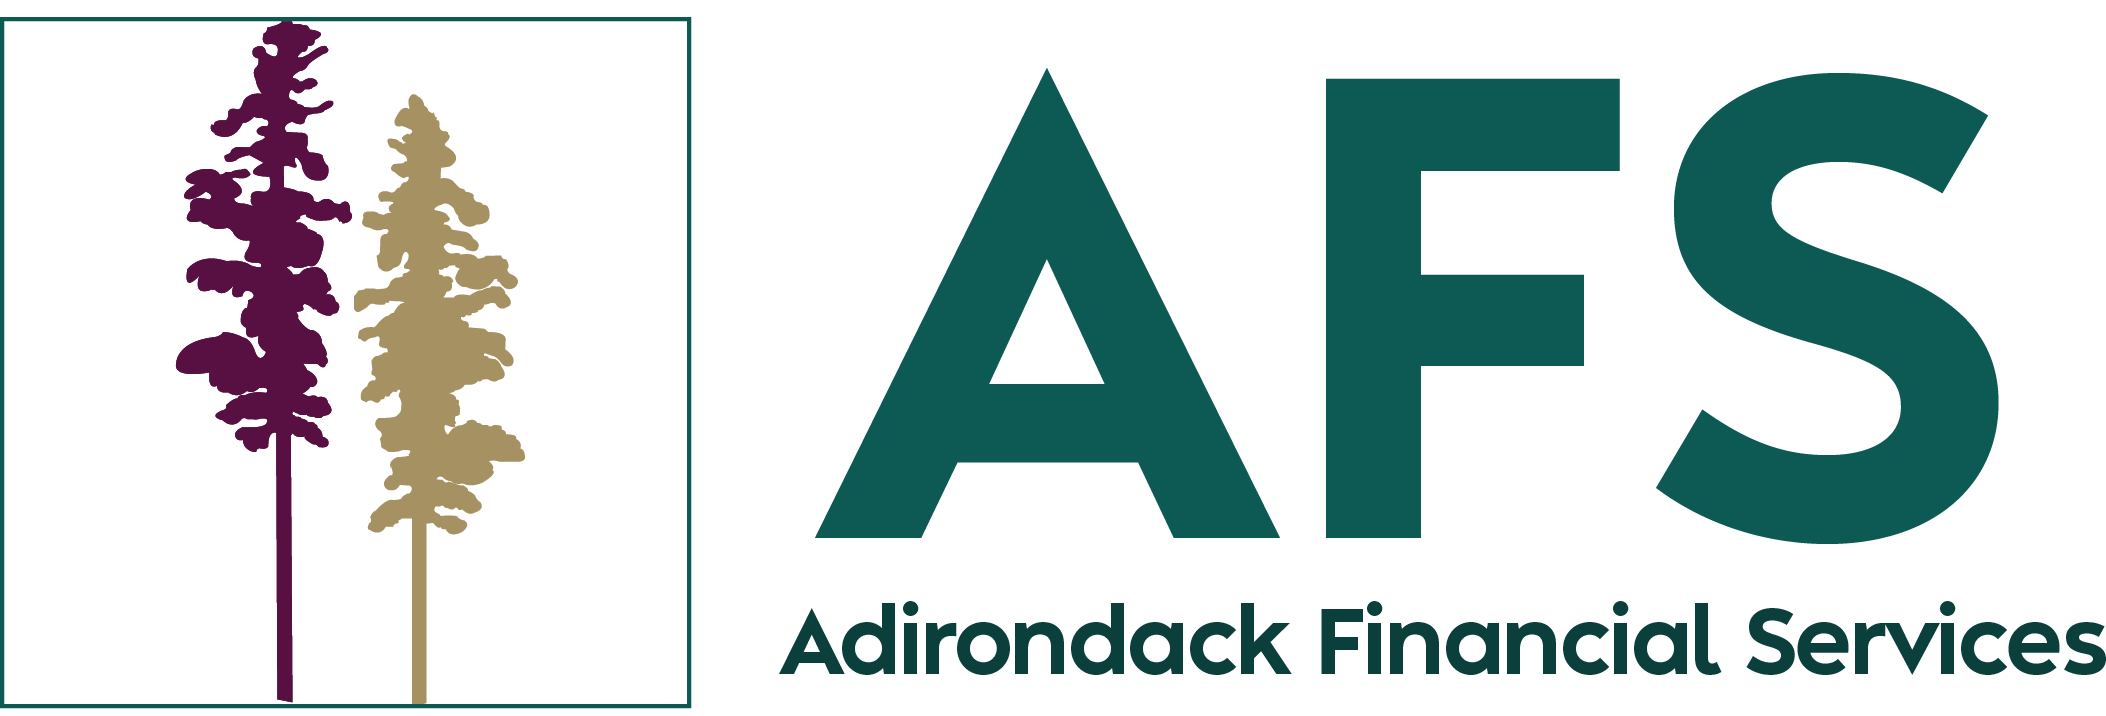 Adirondack Financial Services logo.